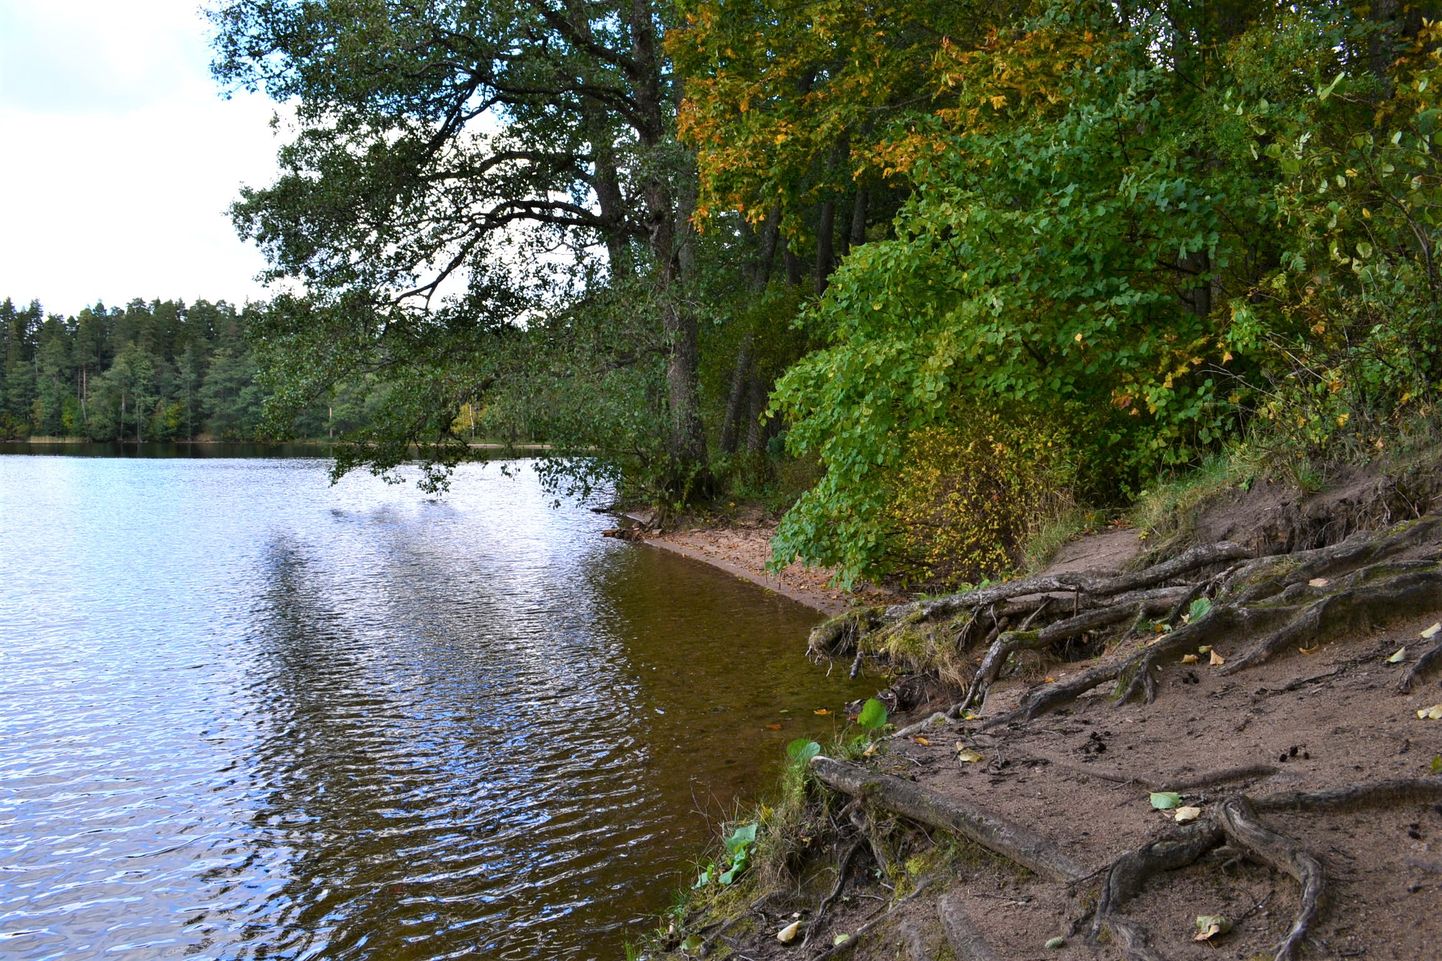 Главный принцип Департамента окружающей среды "Чем меньше людей, тем лучше для природы" действует также в районе озера Ульясте.